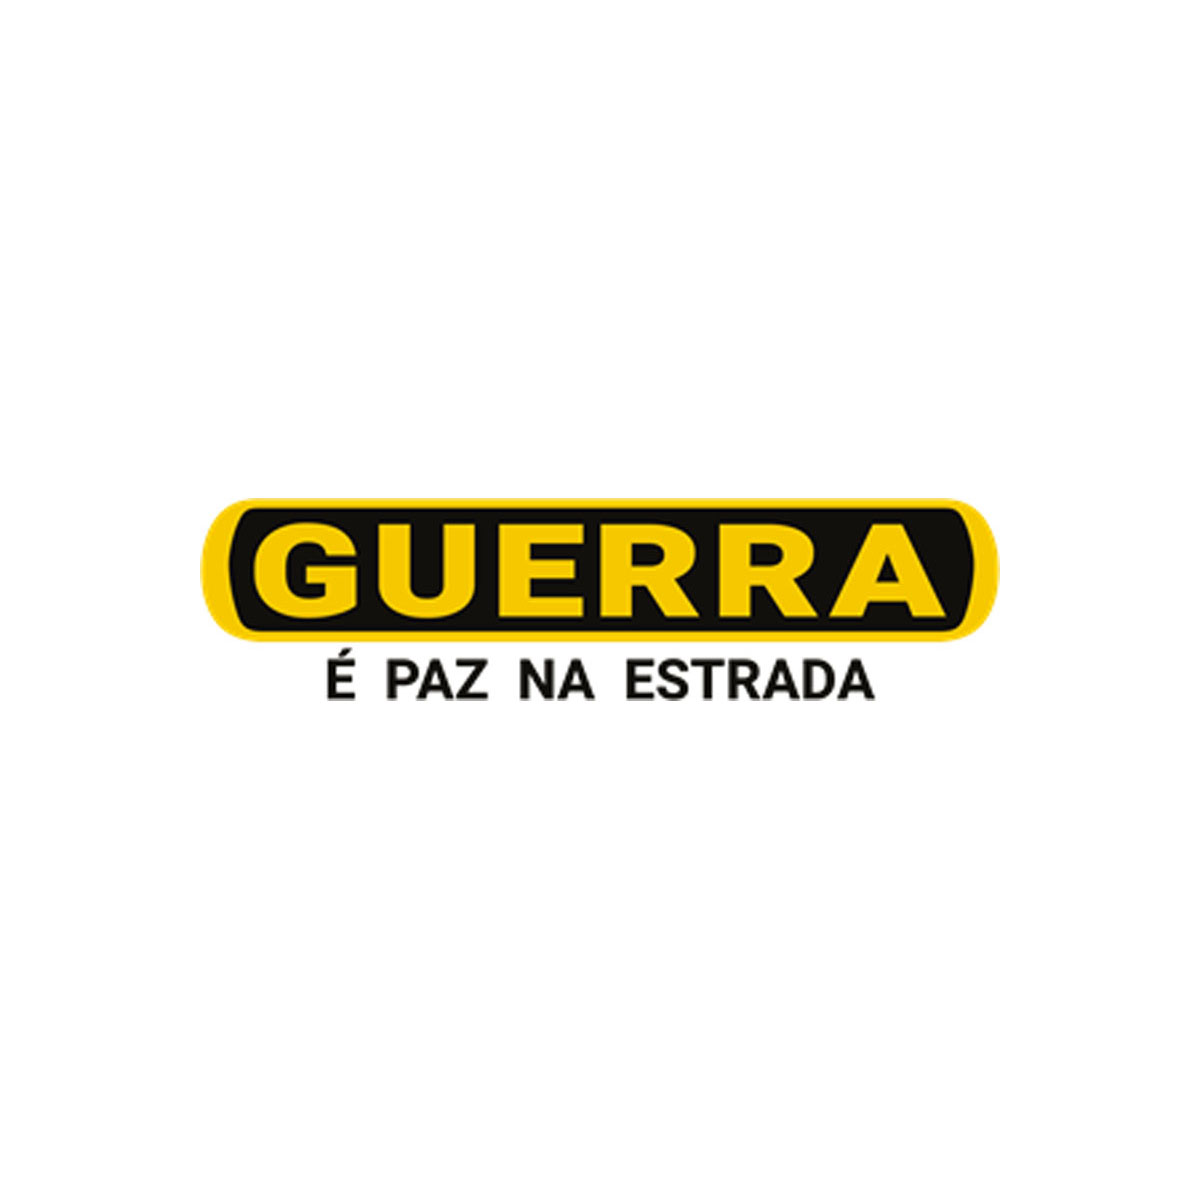 GUERRA